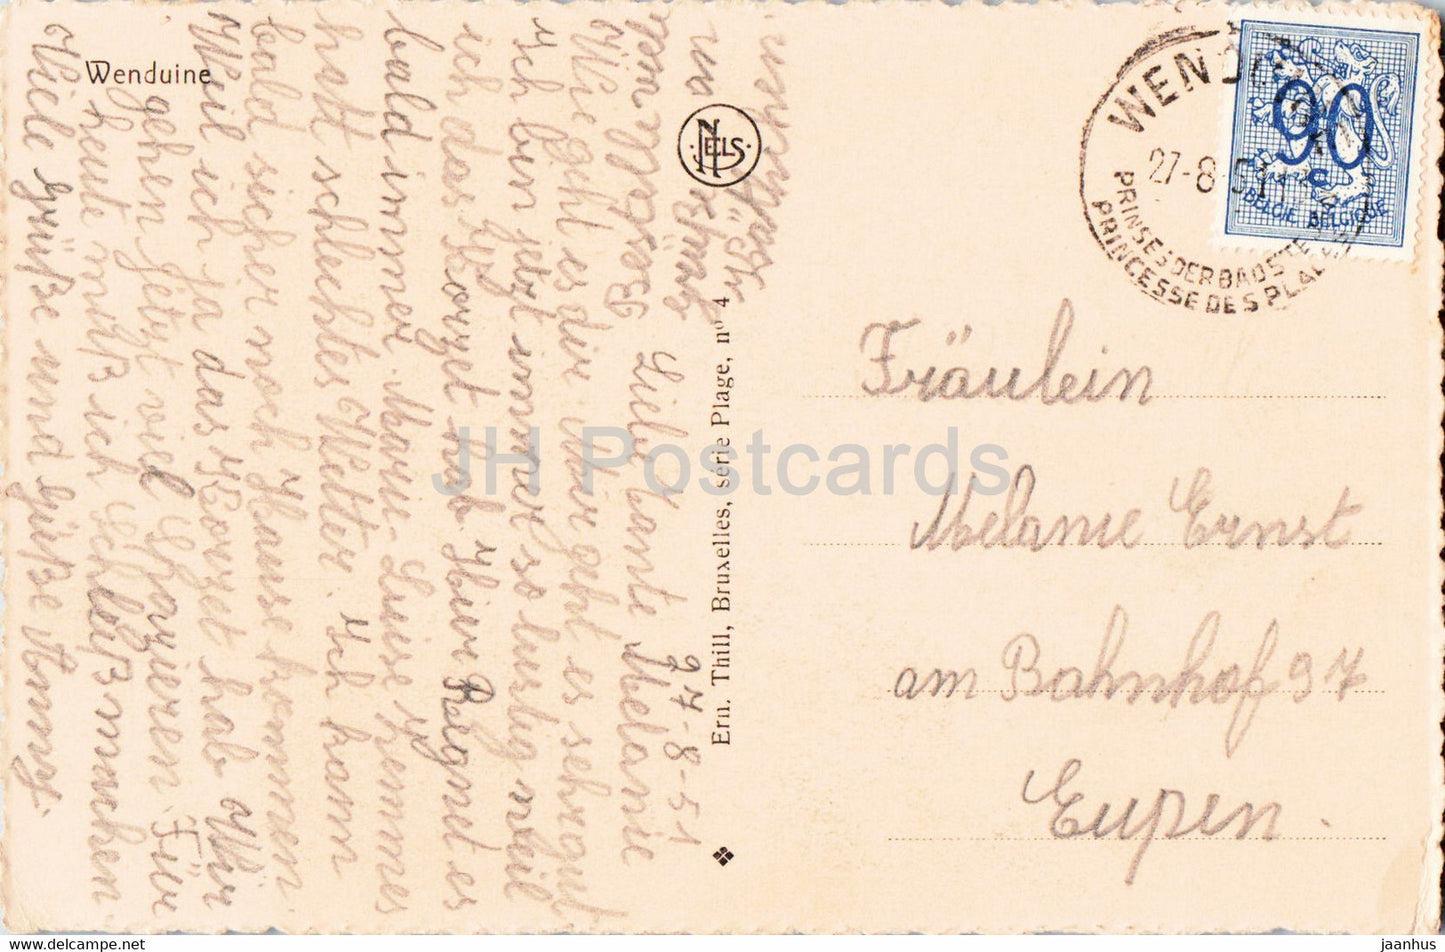 Wenduine - Coucher de soleil - Zonsondergang - voilier - carte postale ancienne - 1951 - Belgique - utilisé